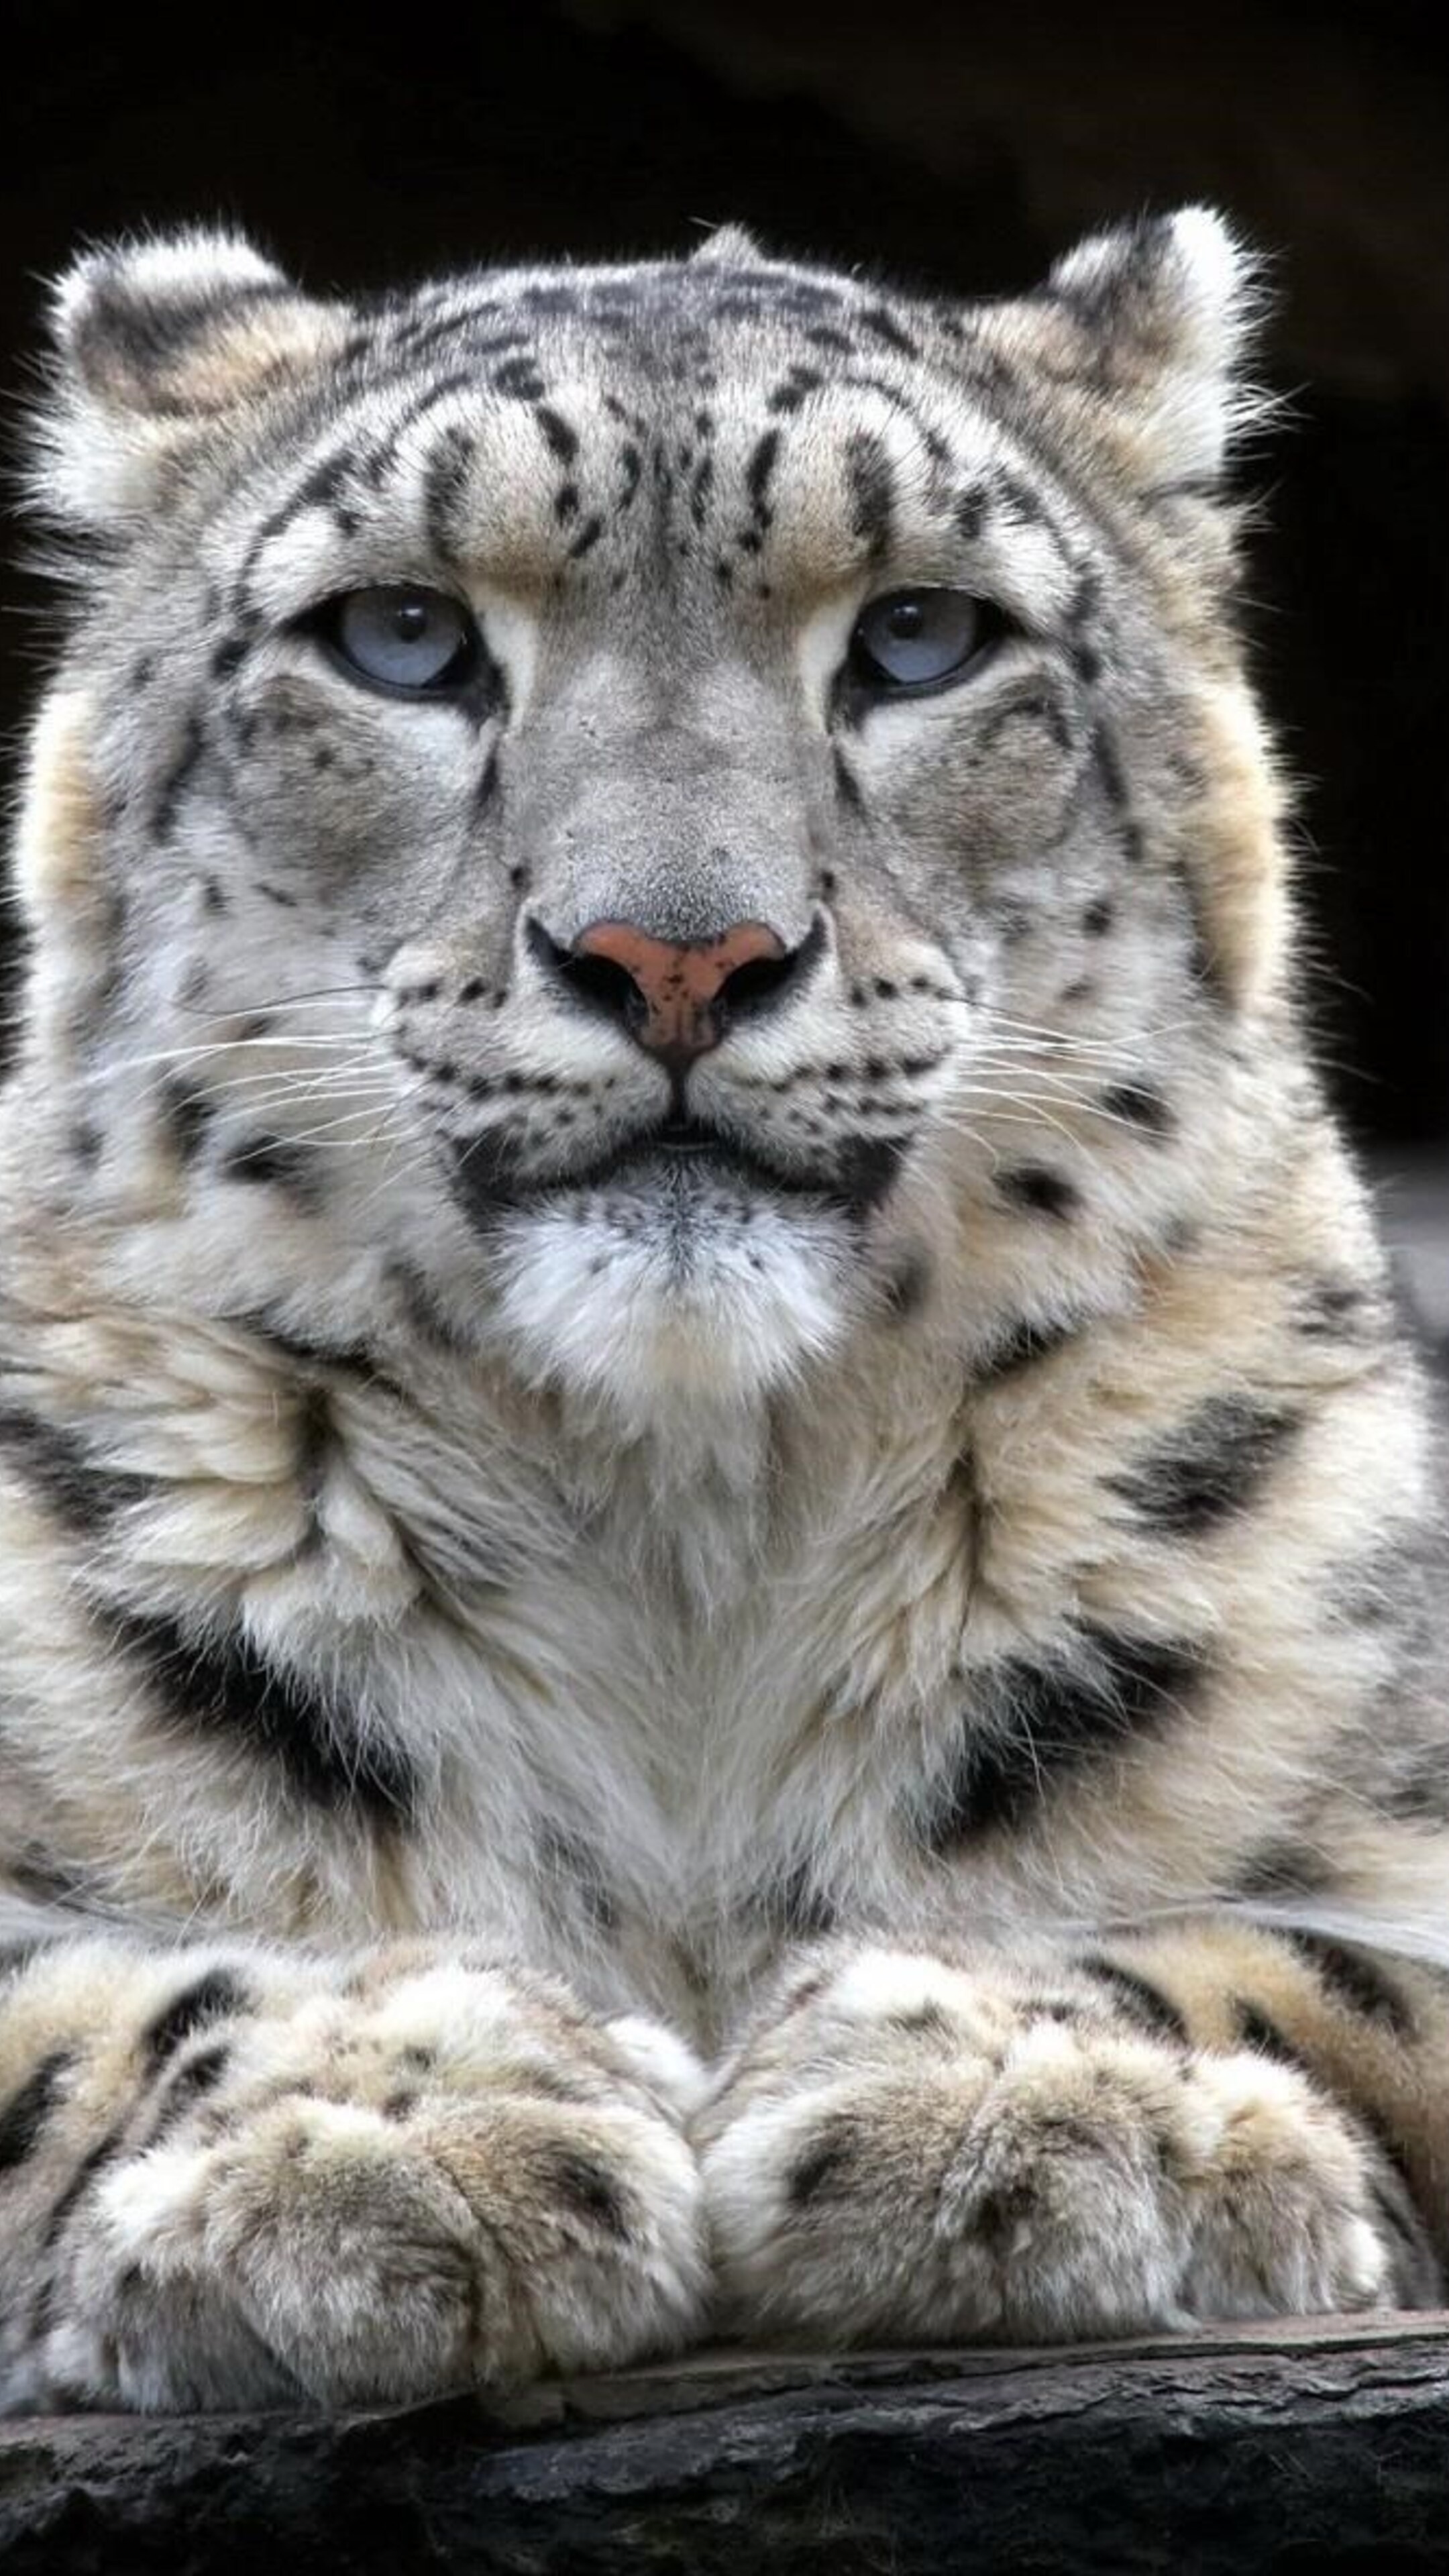 Snow leopard 2 sony, Xperia x xz, Z5 premium hd, 2160x3840 4K Handy